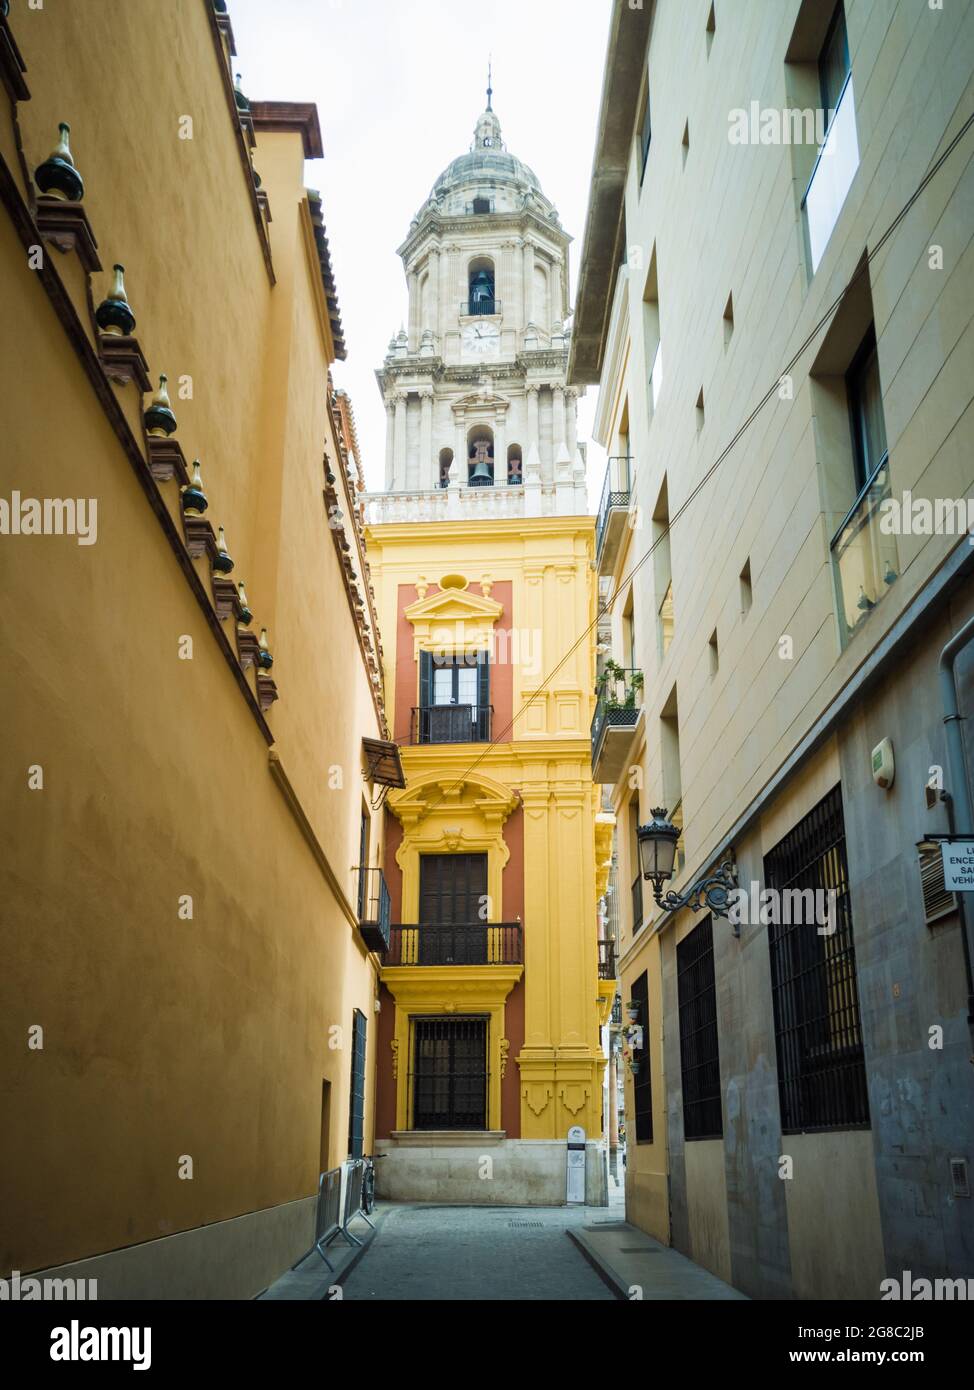 Belle photo de la Cathédrale de l'Incarnation à Malaga, Espagne Banque D'Images